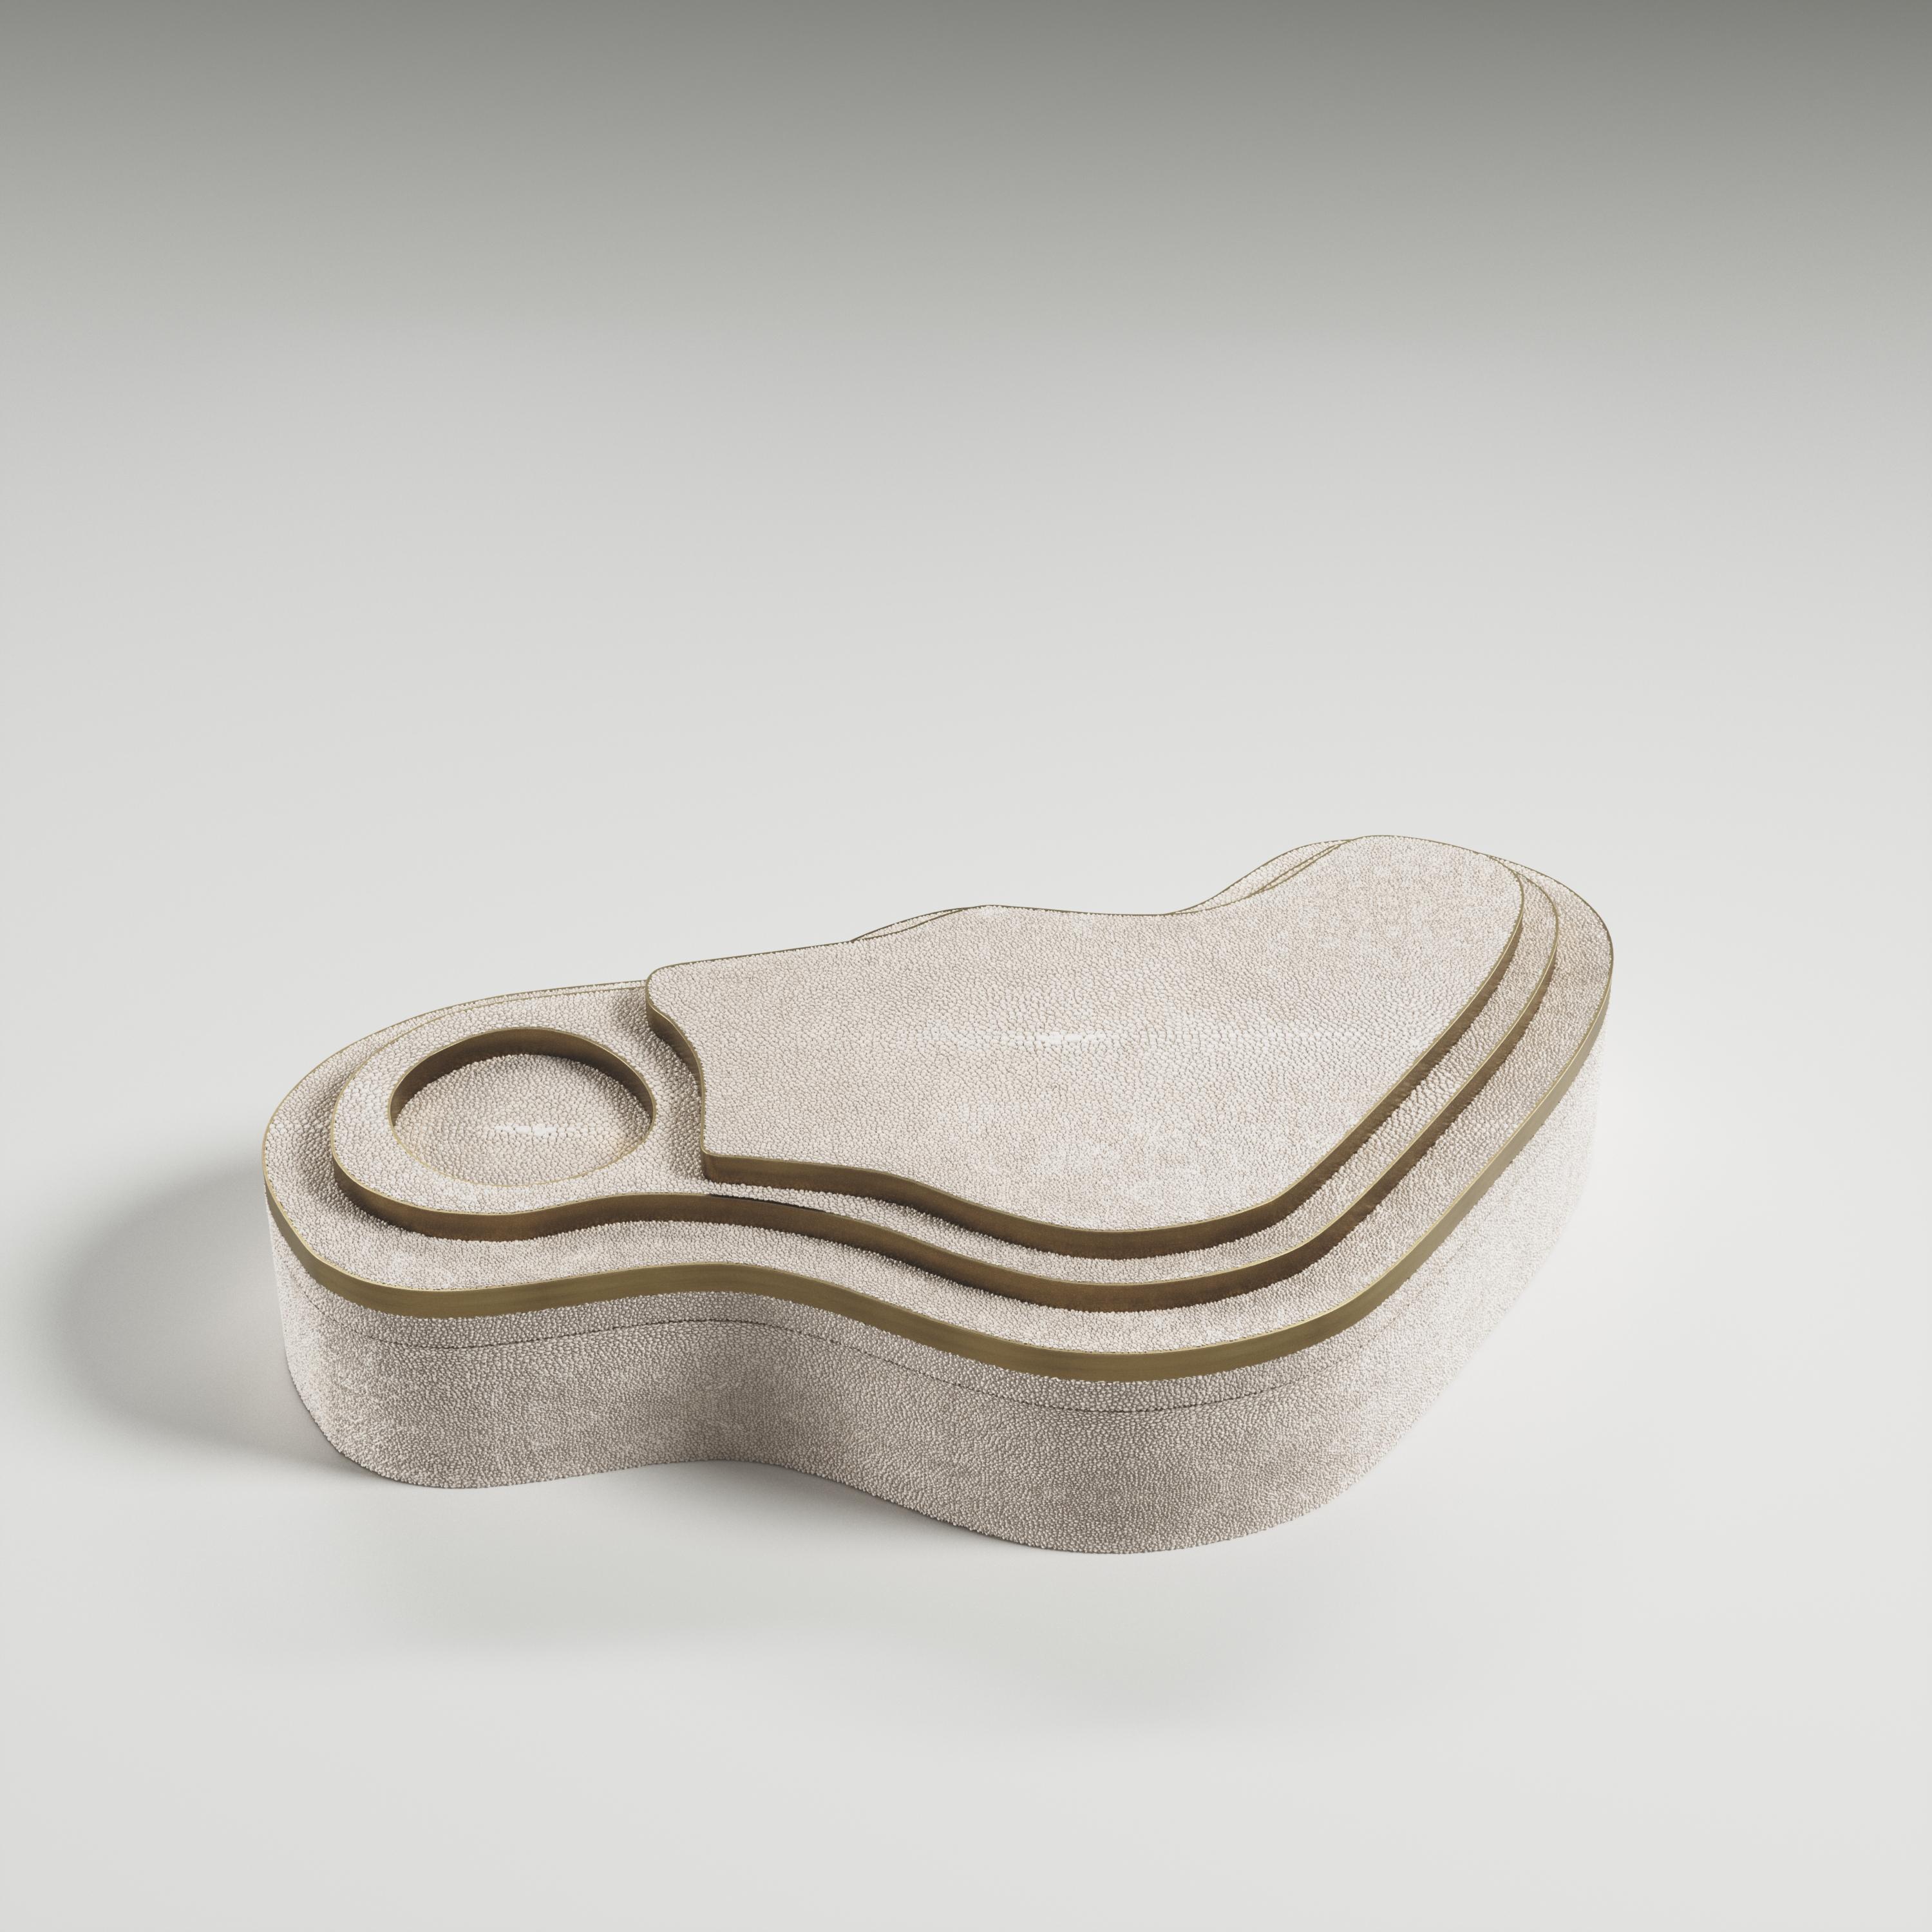 Die Maskenbox mit Relief von Kifu Paris ist ein vielseitiges und organisches Stück. Die amorphe Platte und der Sockel sind mit einer Mischung aus cremefarbenem Chagrin und Messing in Bronze-Patina eingelegt. Dieses Stück wurde von Kifu Augousti, der